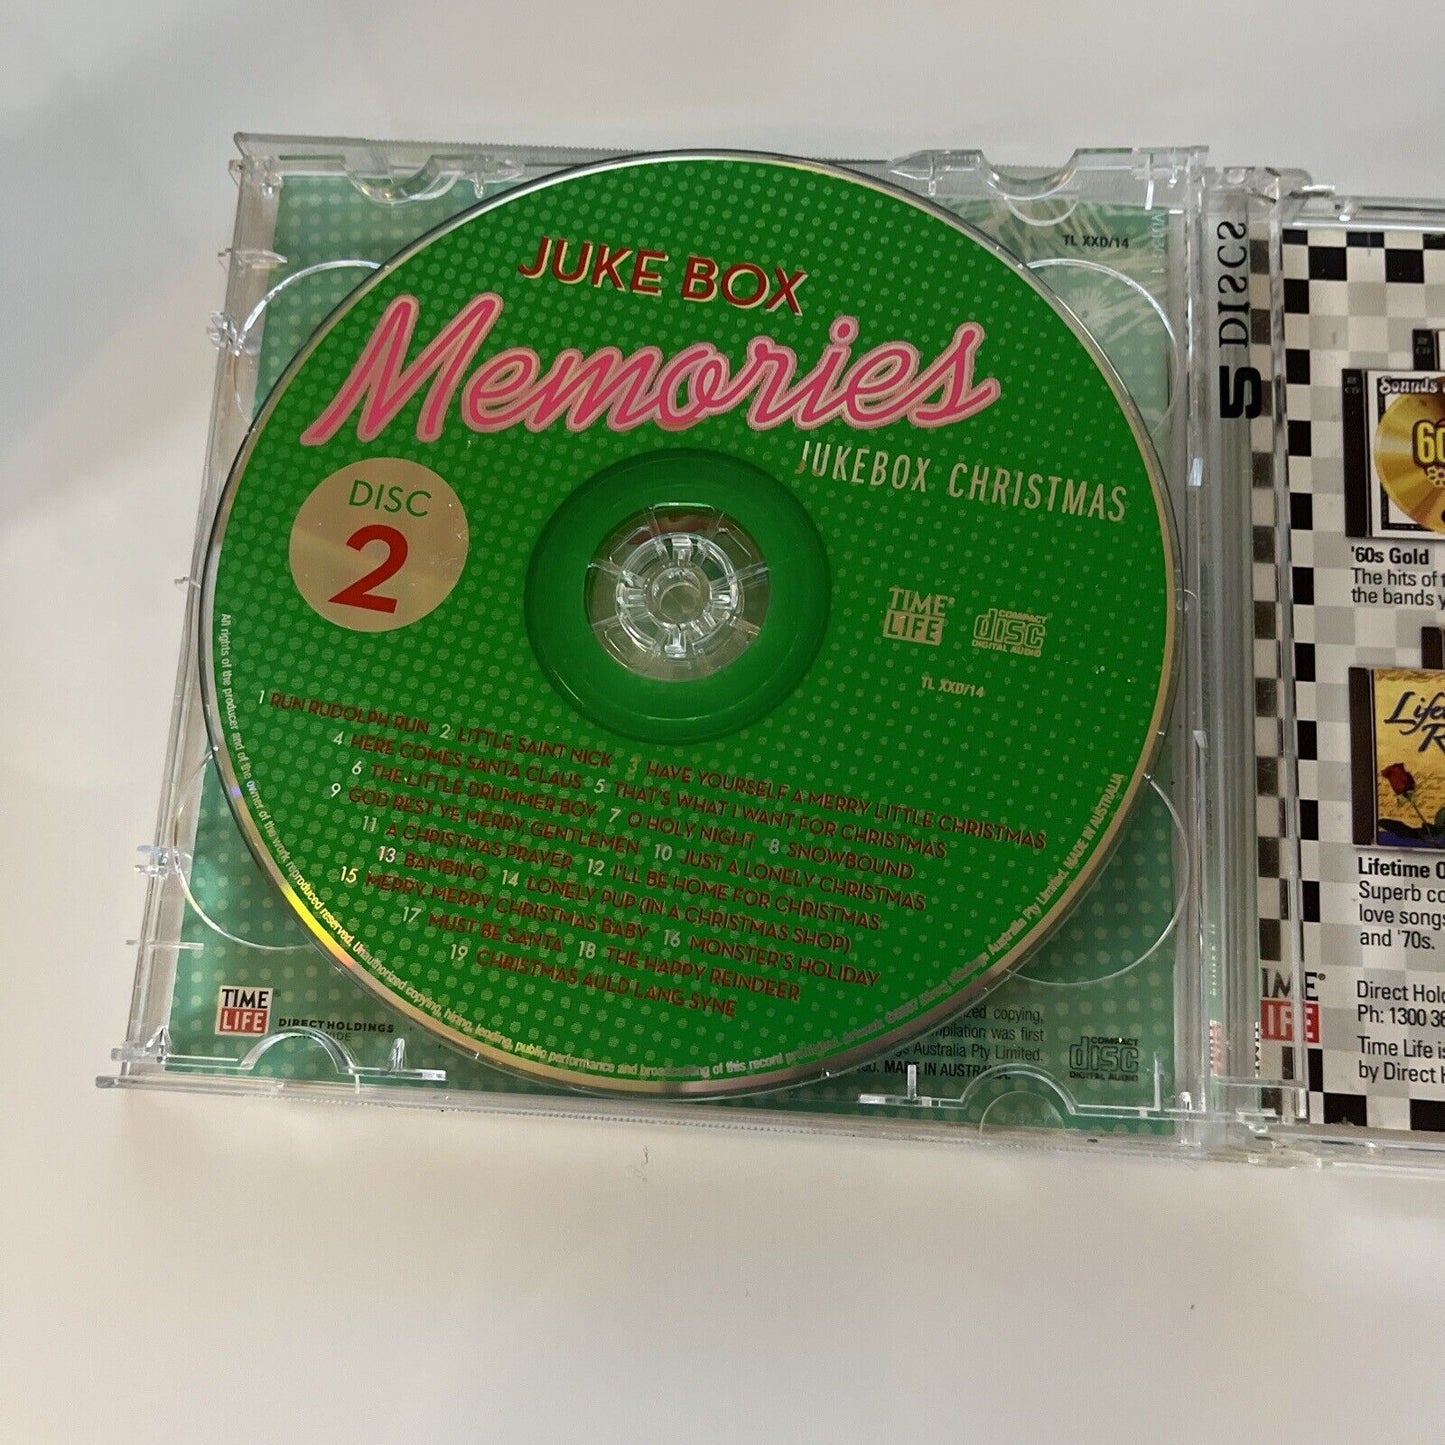 Jukebox Memories Box - Jukebox Christmas (CD, 2007, 2-Disc)